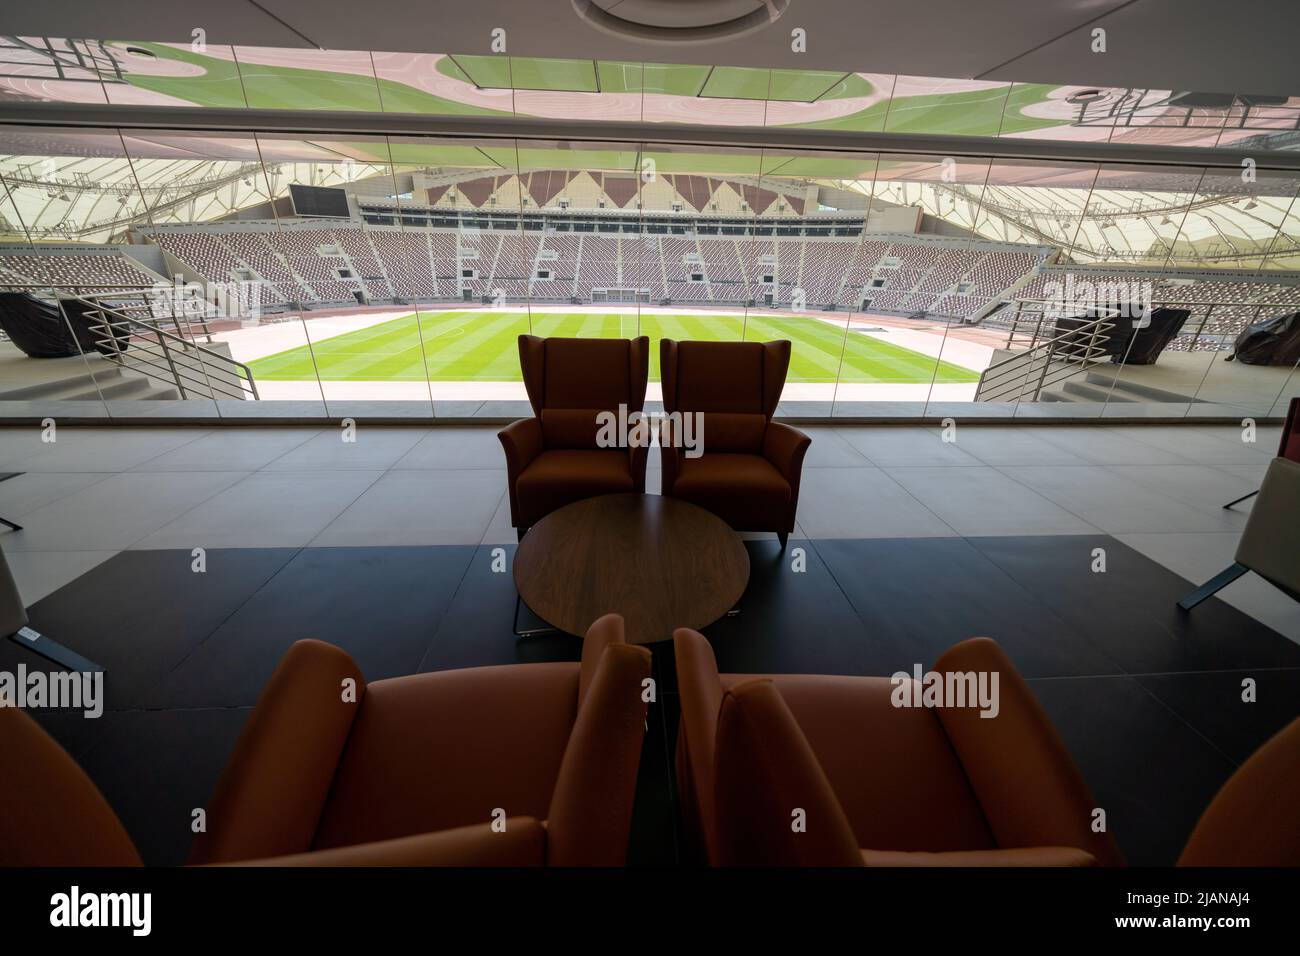 VIP Lounge allo Stadio Internazionale di Khalifa. L'arena da 40.000 posti è il più antico dei 8 stadi che ospiterà partite alla Coppa del mondo FIFA Qatar 2022 Foto Stock